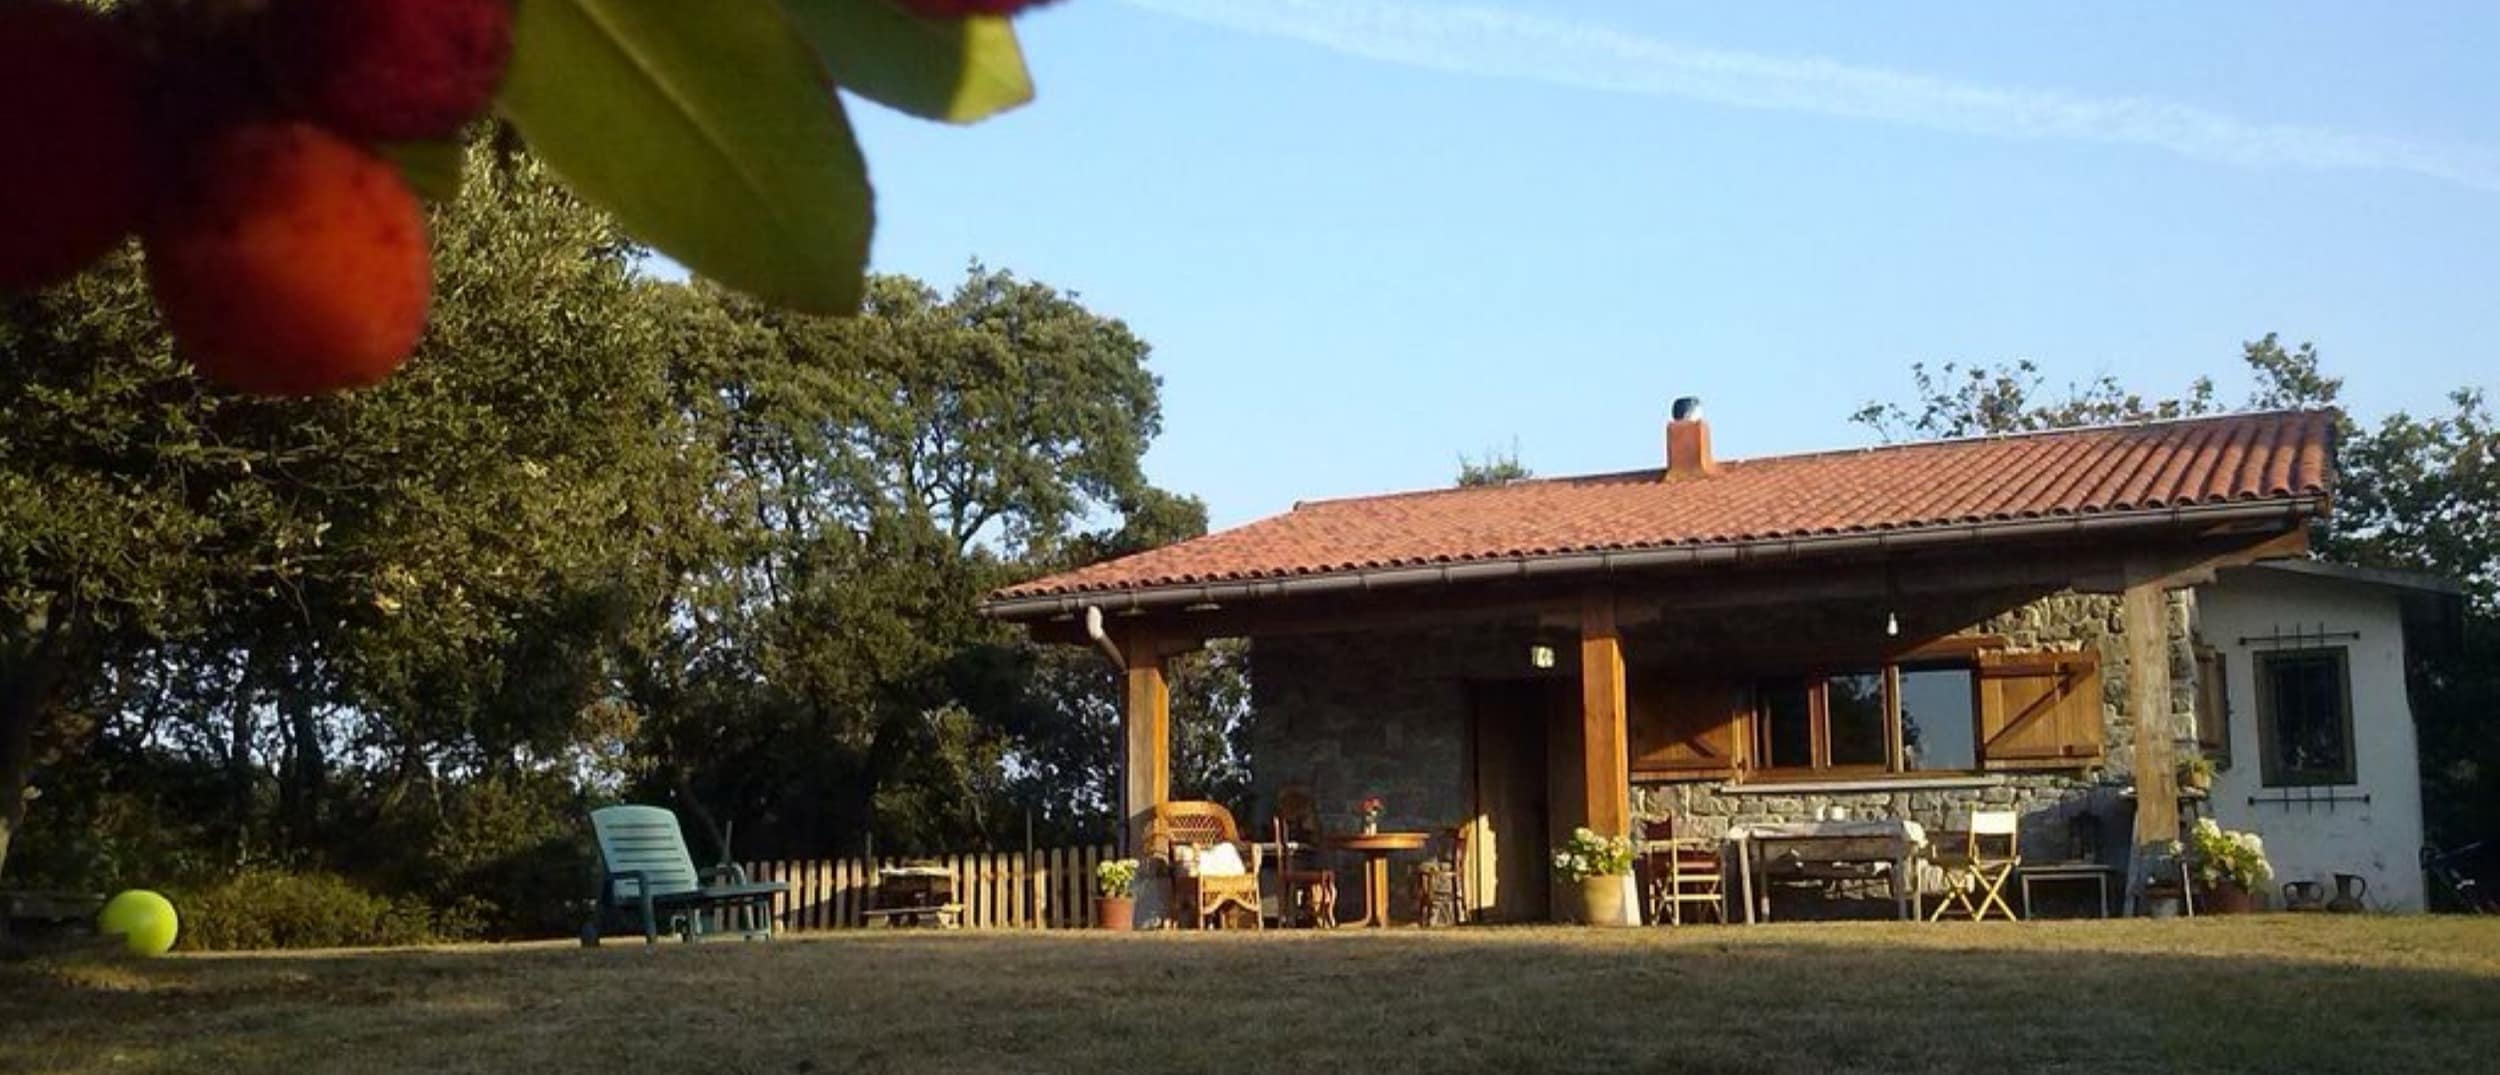 Cuatro destinos del País Vasco para encontrar tu casa rural